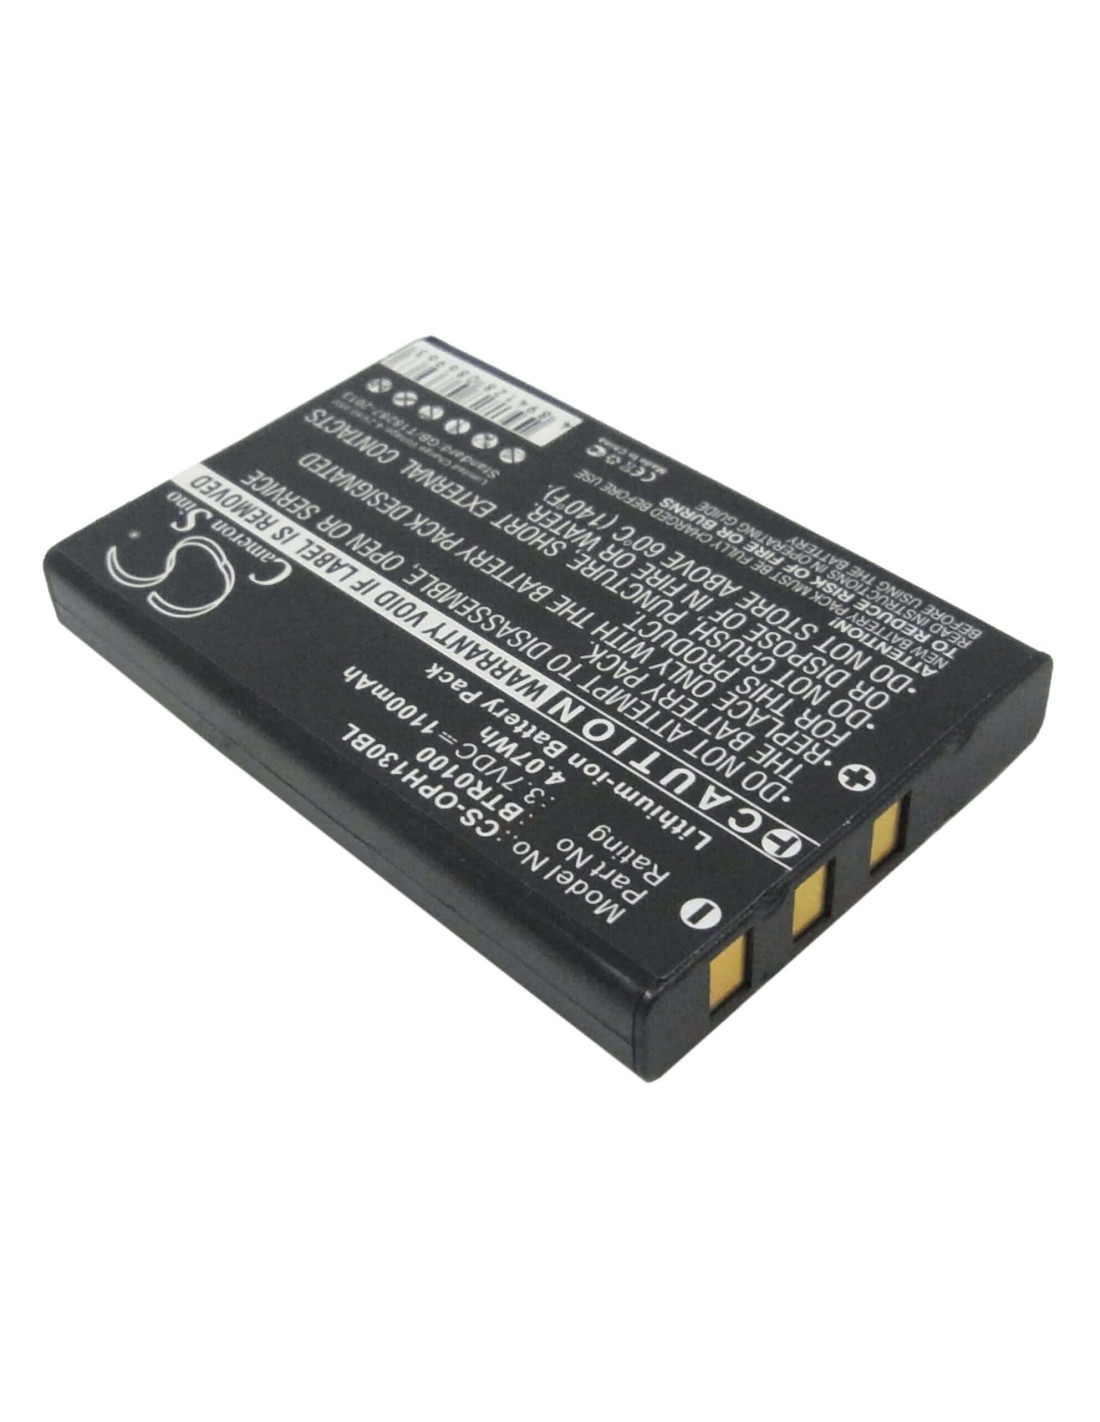 Battery for Denso Bht500 3.7V, 1100mAh - 4.07Wh